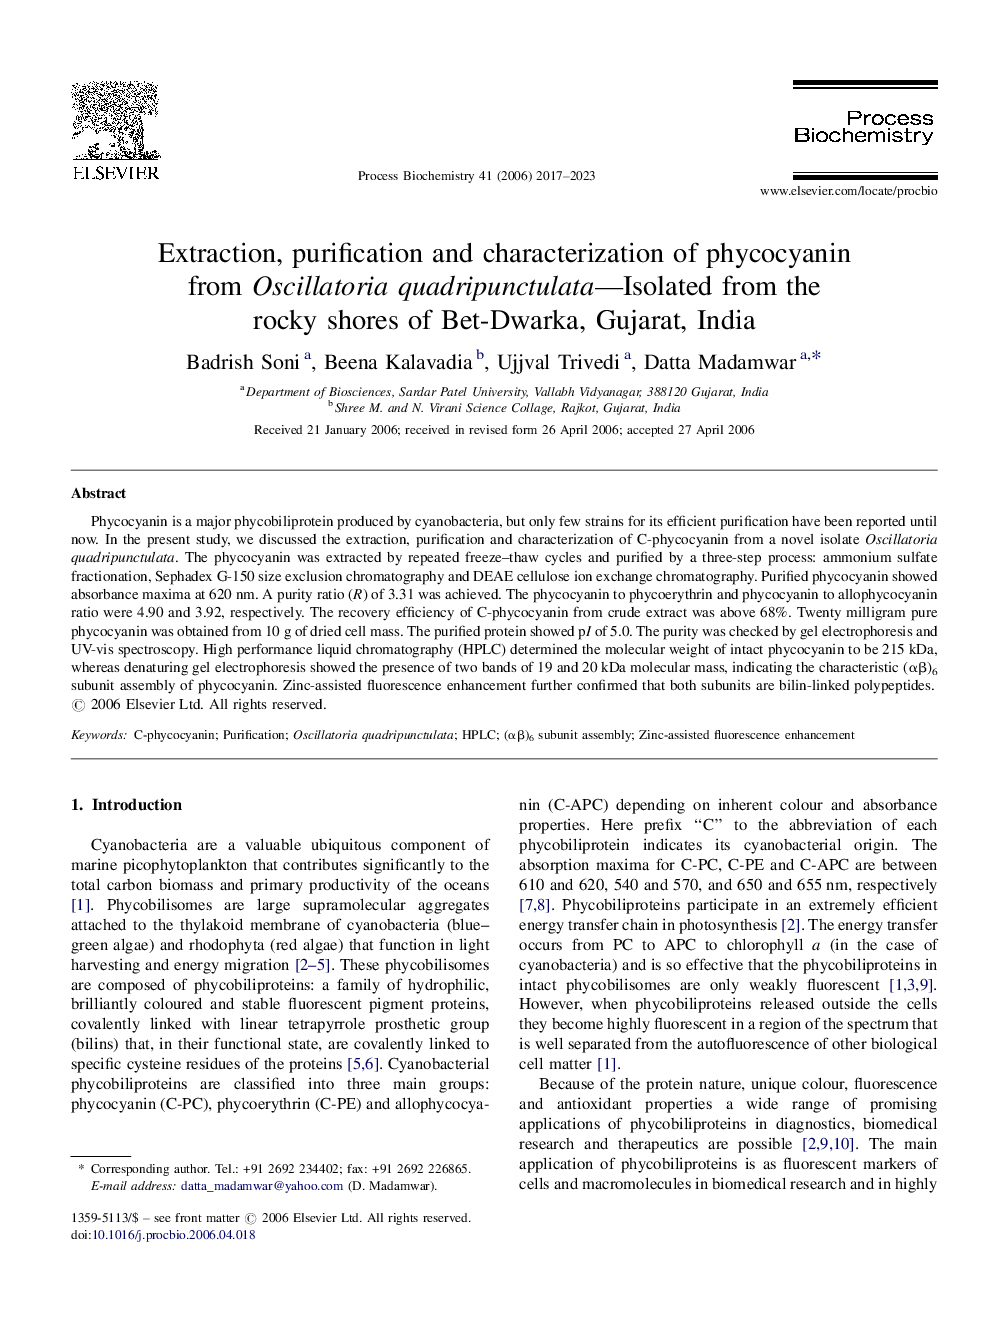 استخراج، خالص سازی و خصوصیات فیکوسیانین از Oscillatoria quadripunctulata-جدا شده از سواحل صخره ای شرط Dwarka، گجرات، هند